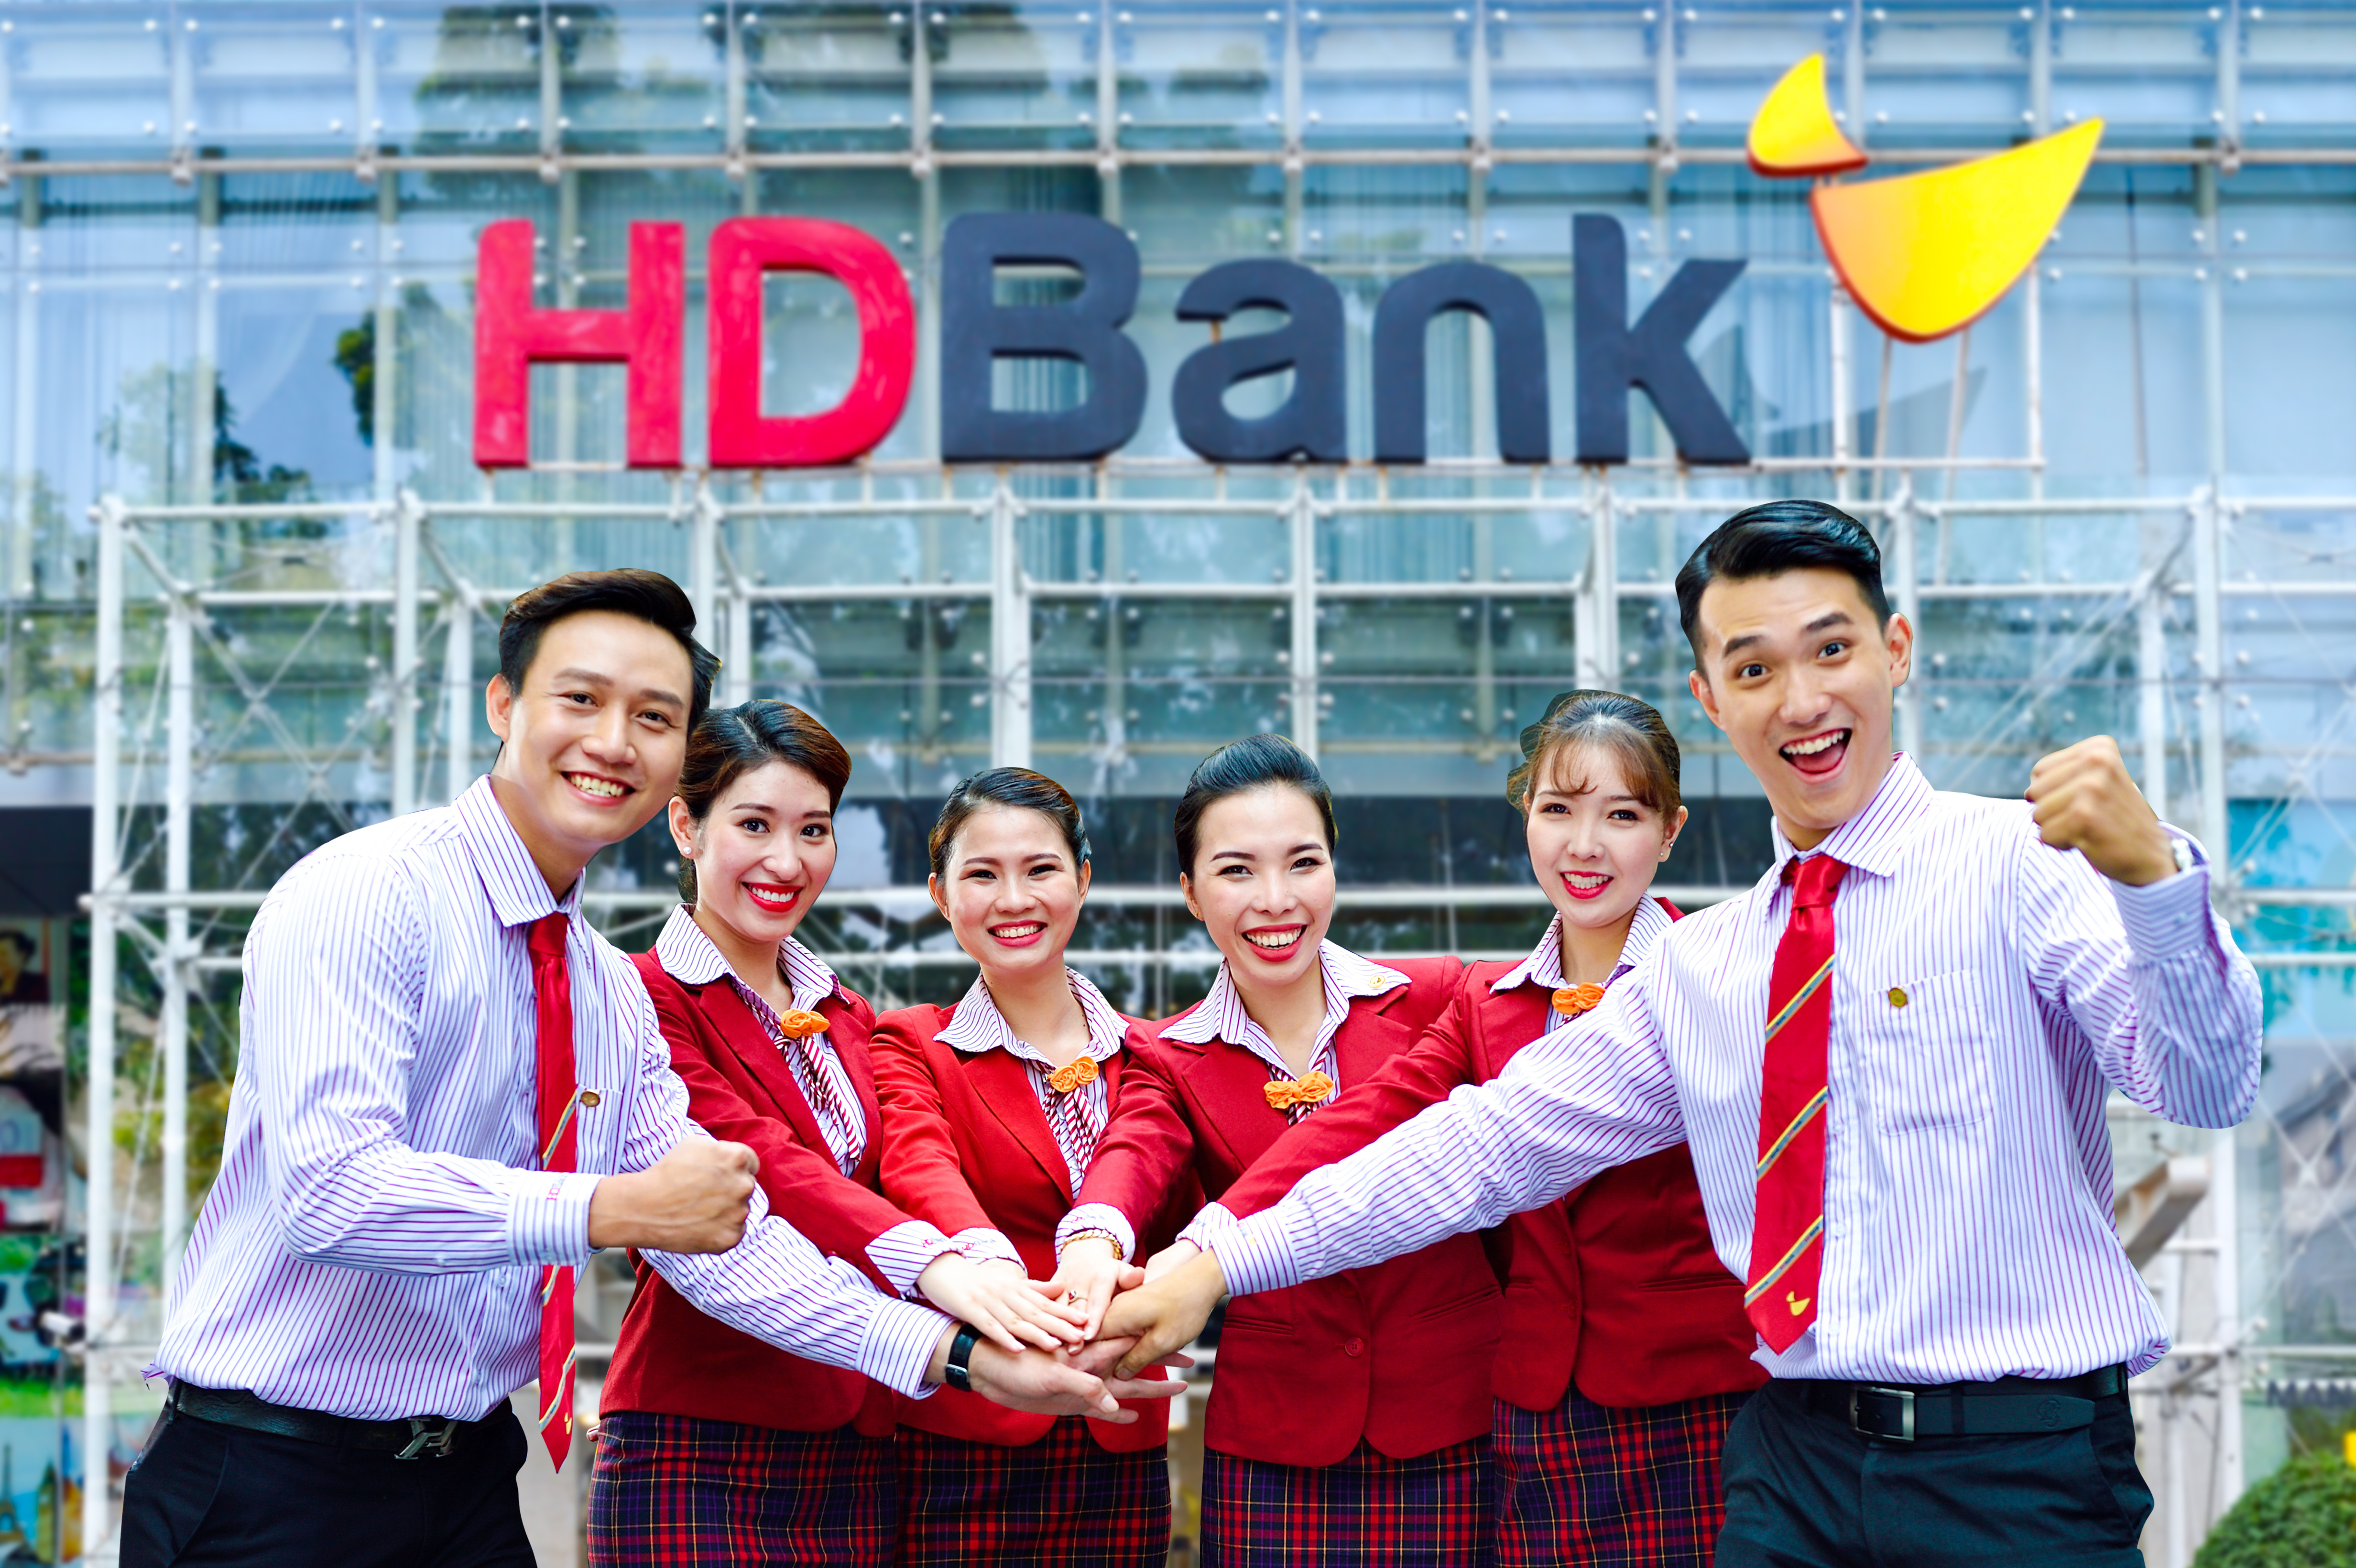 HDBank: Thật đáng ngạc nhiên khi HDBank là ngân hàng được đánh giá rất cao trong nhiều năm qua. Với chất lượng dịch vụ tốt, giao dịch thủ tục nhanh chóng và an toàn, HDBank đã giúp hàng triệu khách hàng giải quyết các vấn đề tài chính một cách thông minh. Bạn hãy xem các hình ảnh liên quan đến HDBank để hiểu rõ hơn về tiềm năng và sức mạnh của ngân hàng này.